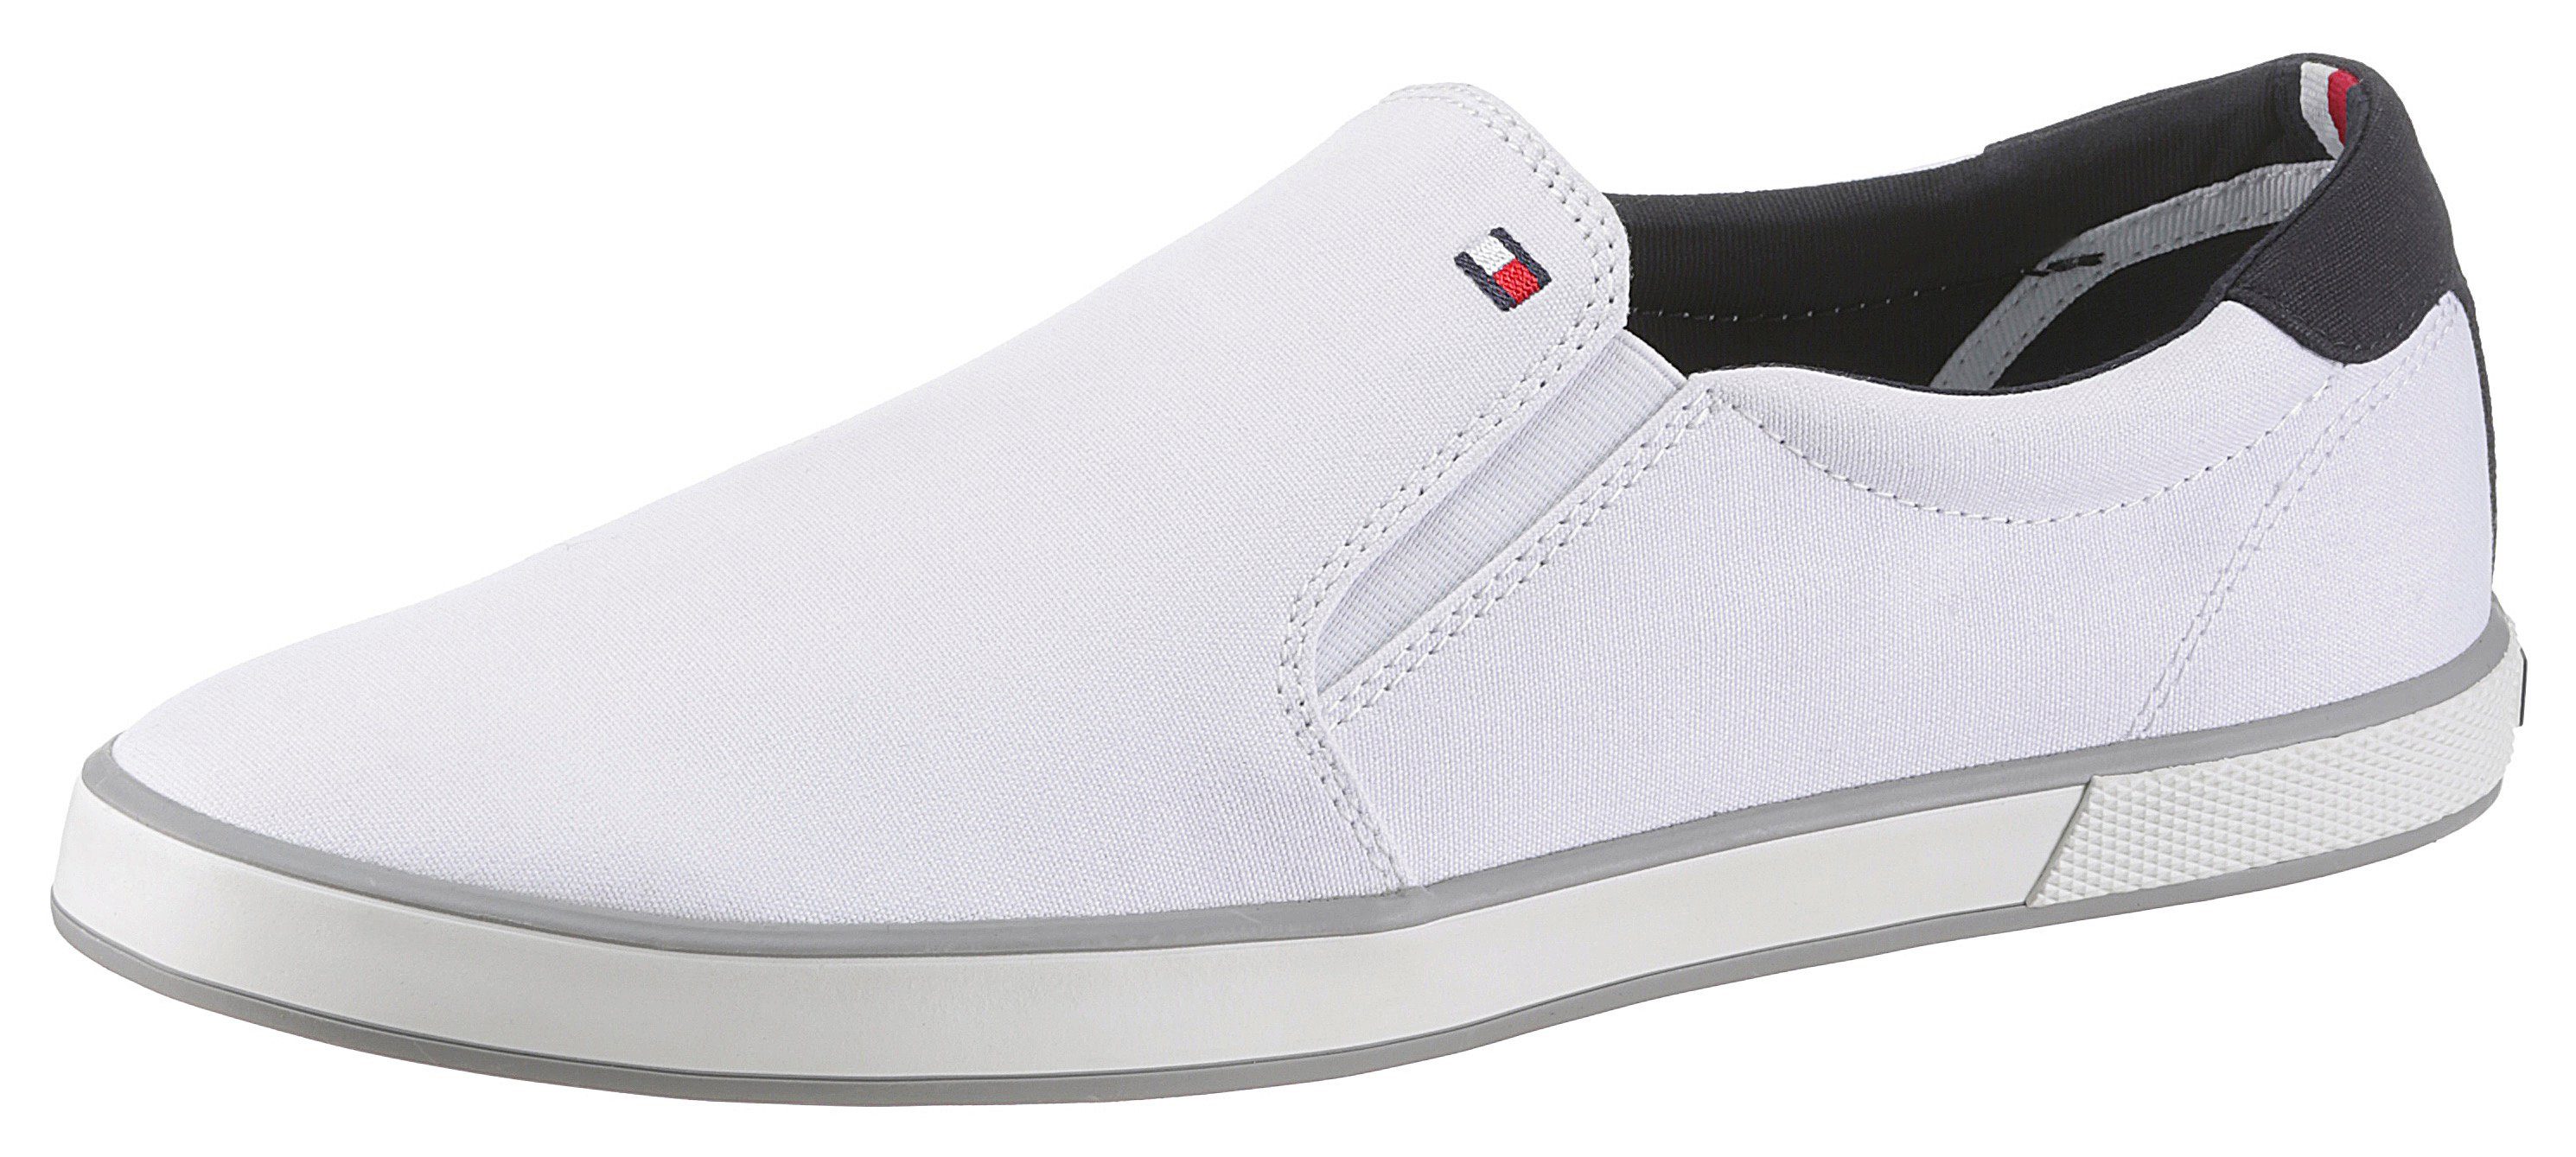 Tommy Hilfiger »ICONIC SLIP ON SNEAKER« Slip-On Sneaker mit seitlichen  Stretcheinsätzen online kaufen | OTTO